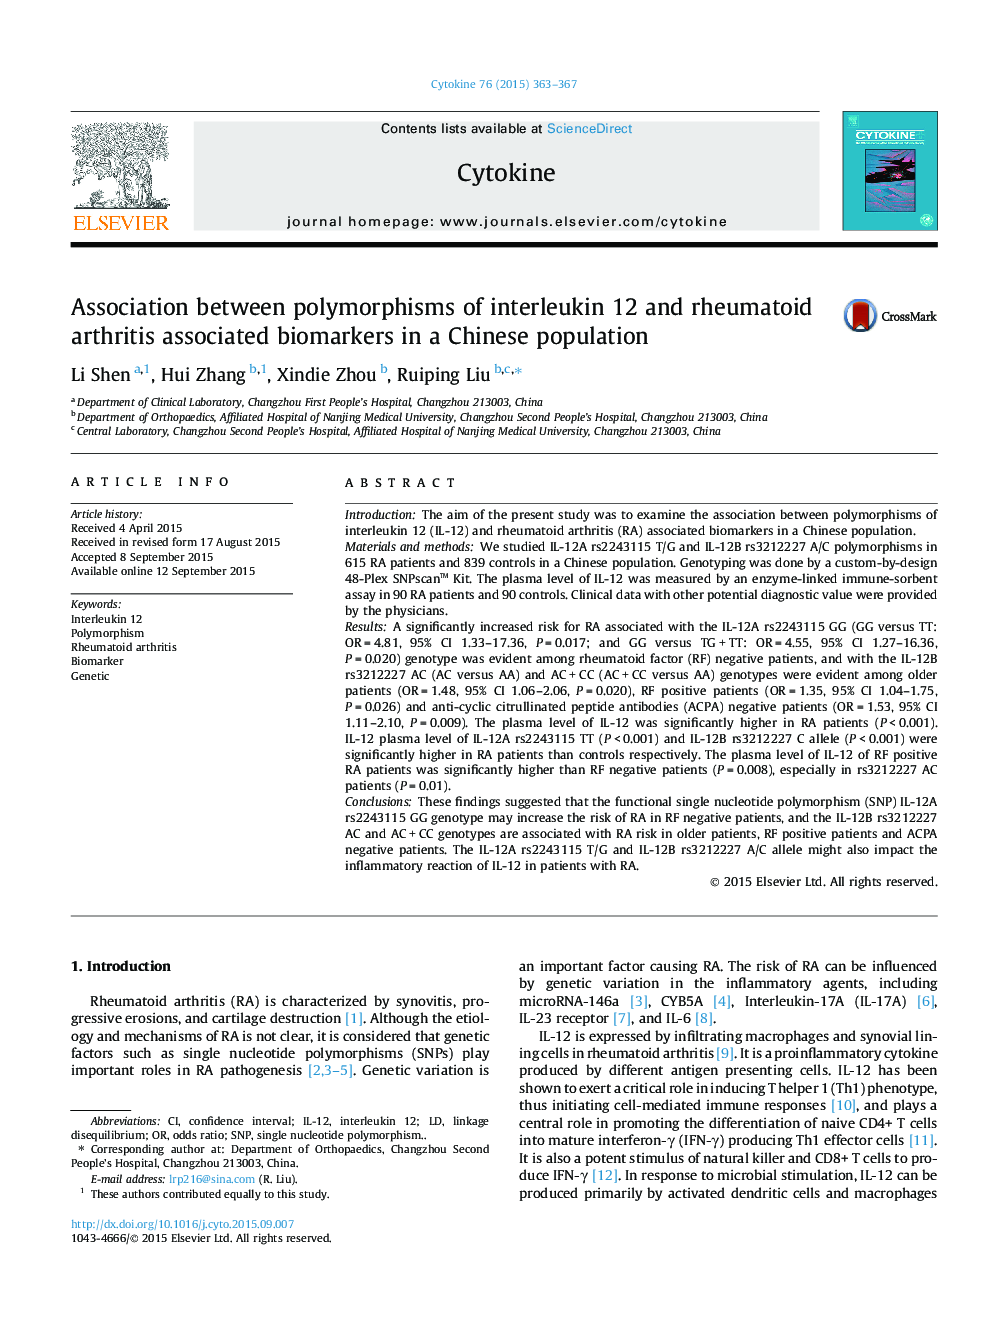 ارتباط بین پلی مورفیسم های اینترلوکین 12 و بیومارکرهای مرتبط با آرتریت روماتوئید در یک جمعیت چینی 